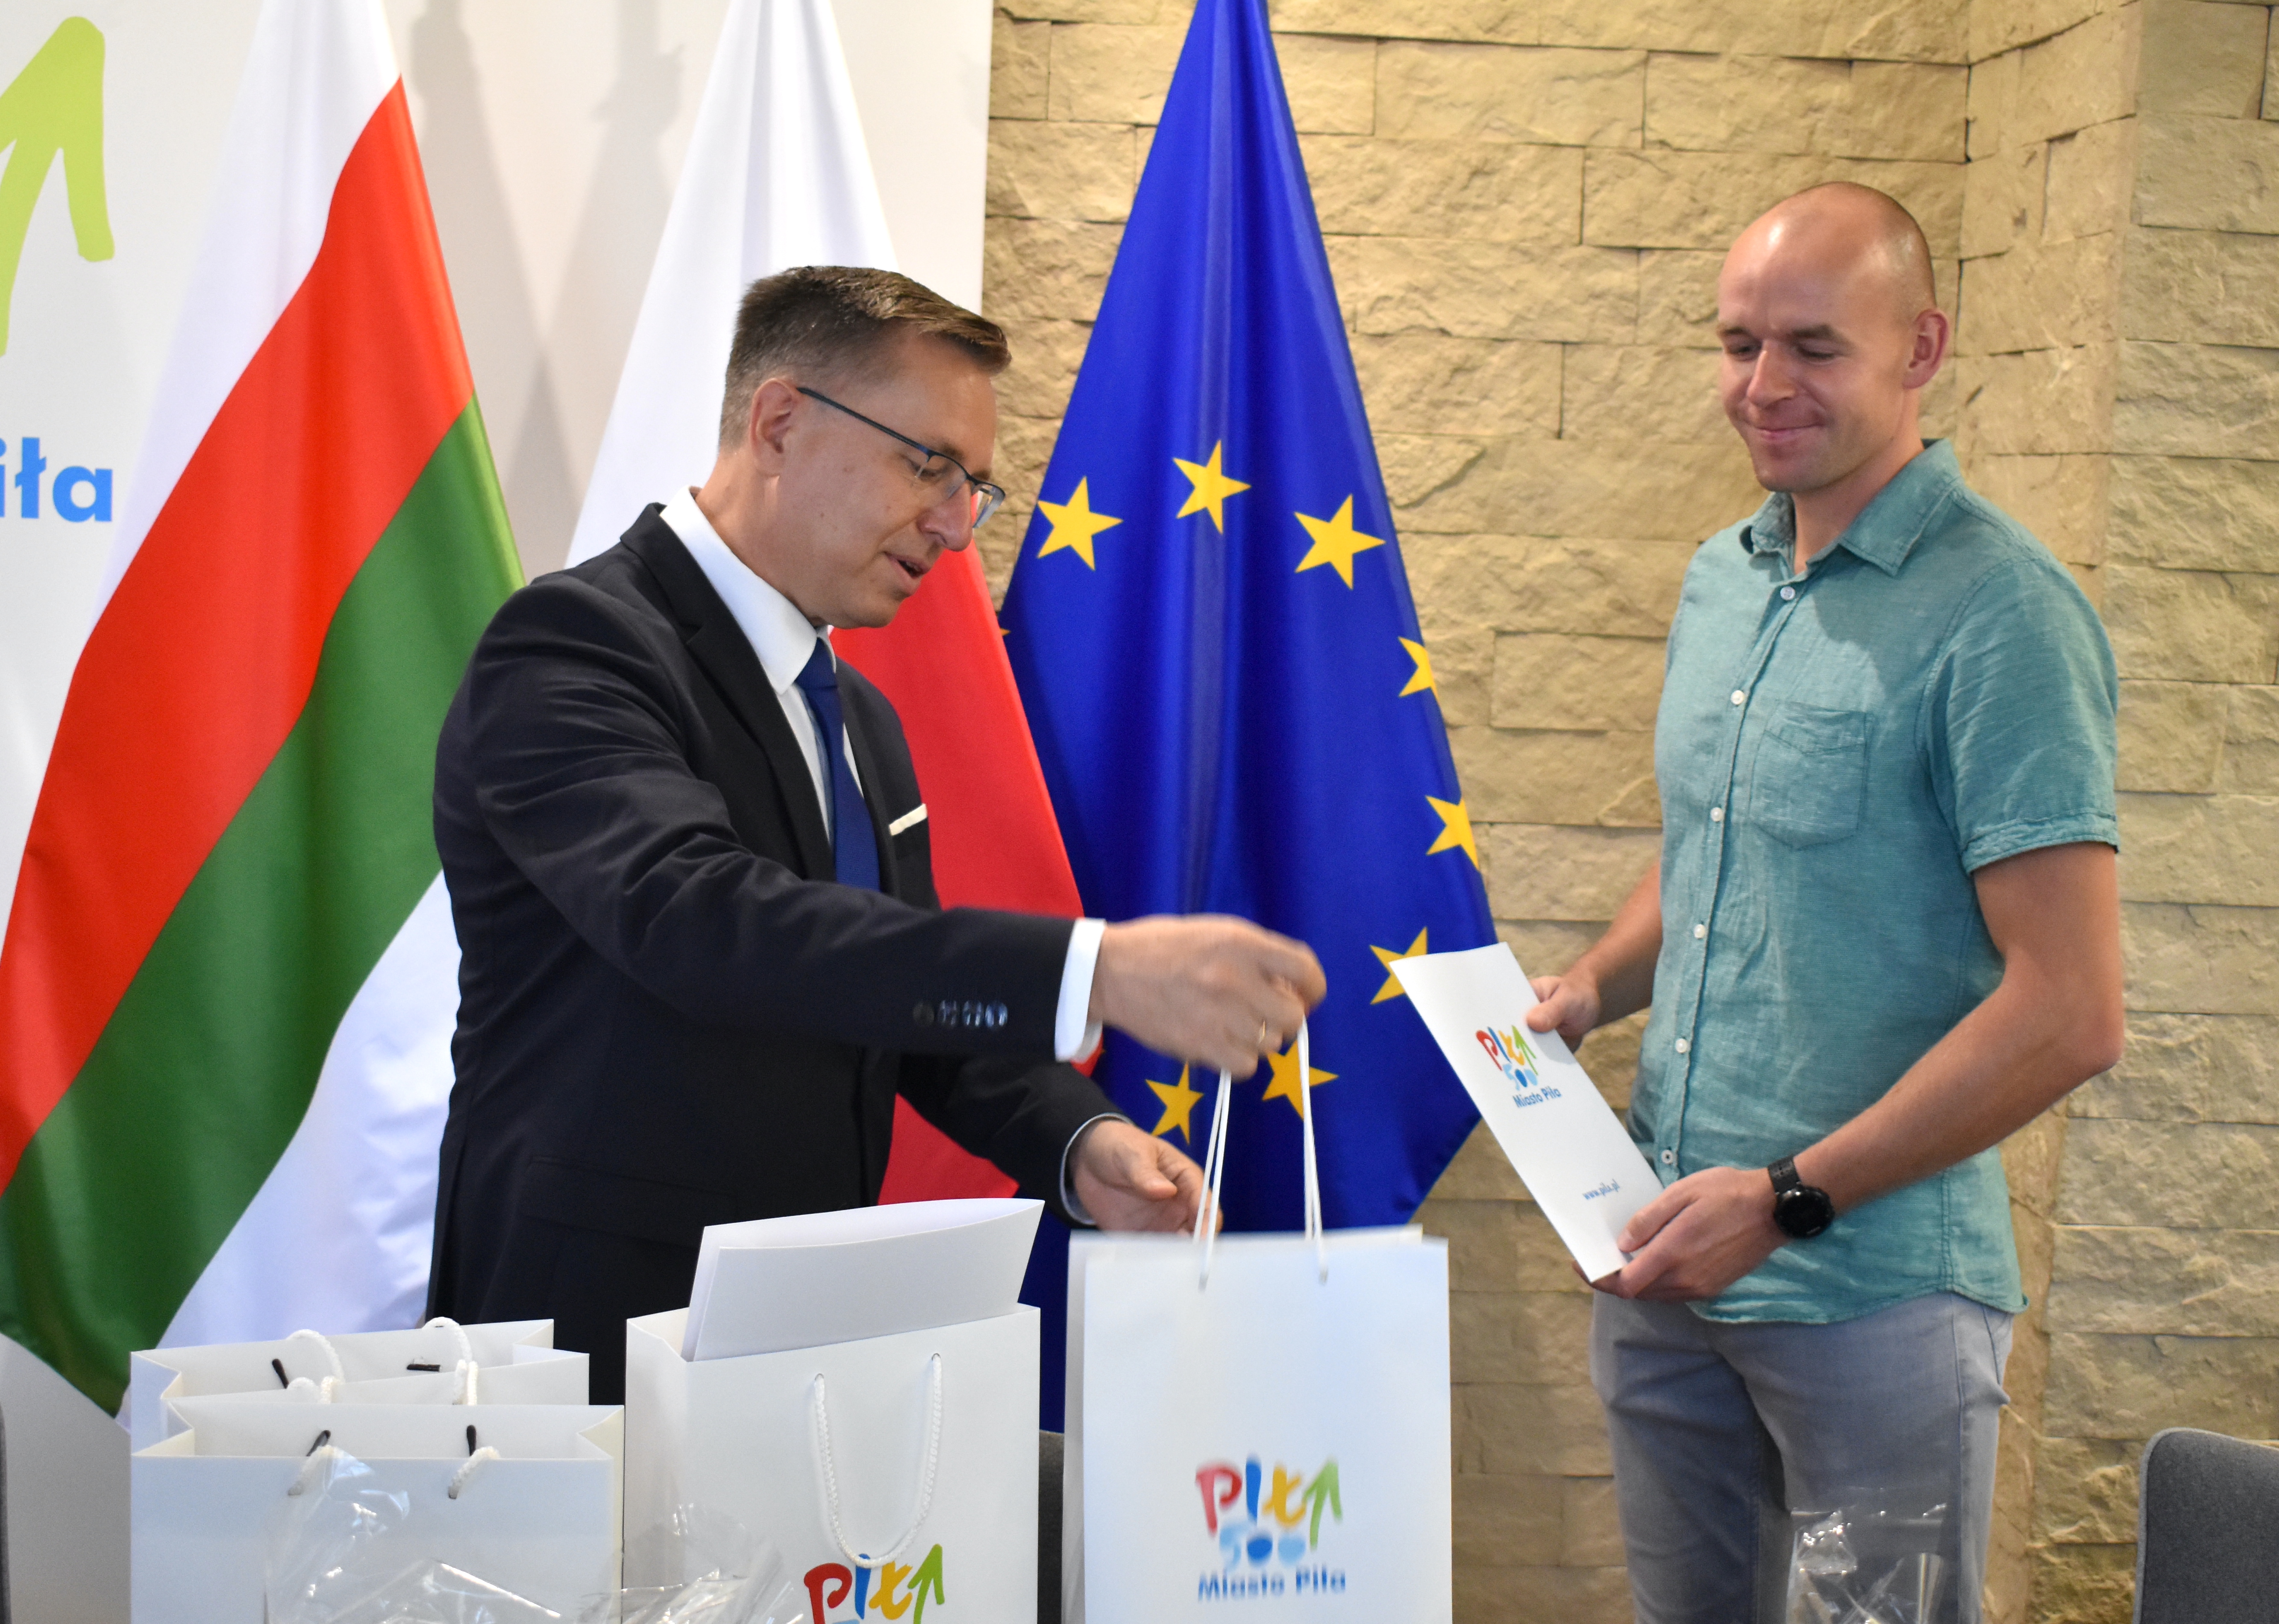 Dwóch mężczyzn, jeden trzyma w rękach teczkę, drugi wręcza paczkę. Na teczce i paczce widać logotyp miasta Piły. W tle stoją flagi miejska, Polska i Unii Europejskiej. 